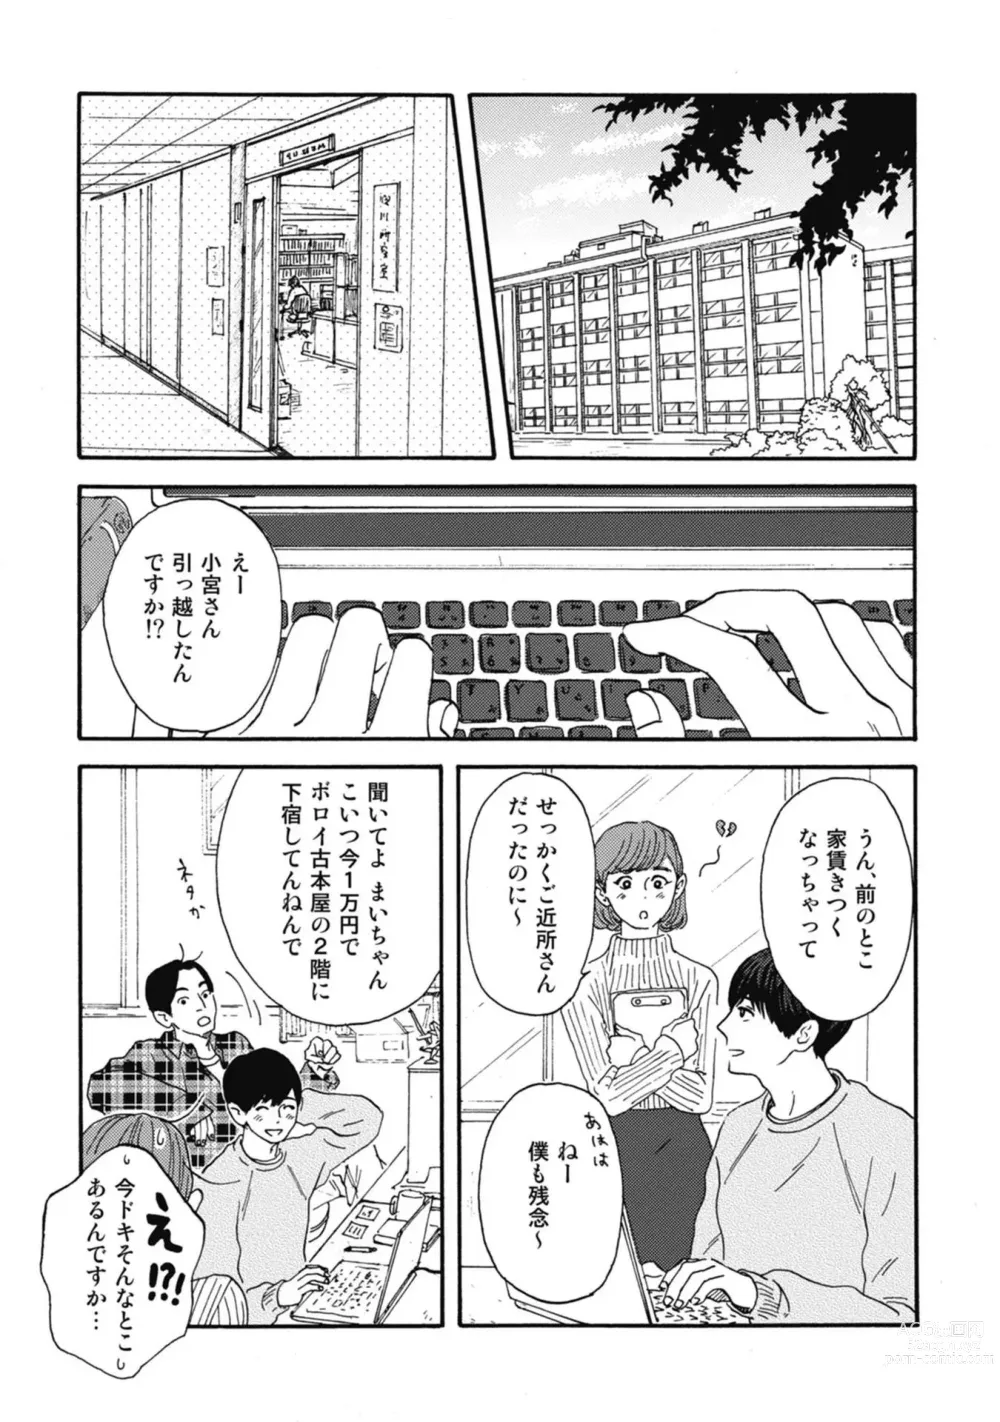 Page 13 of manga Ushimitsu Dokidoki Kosyotentan